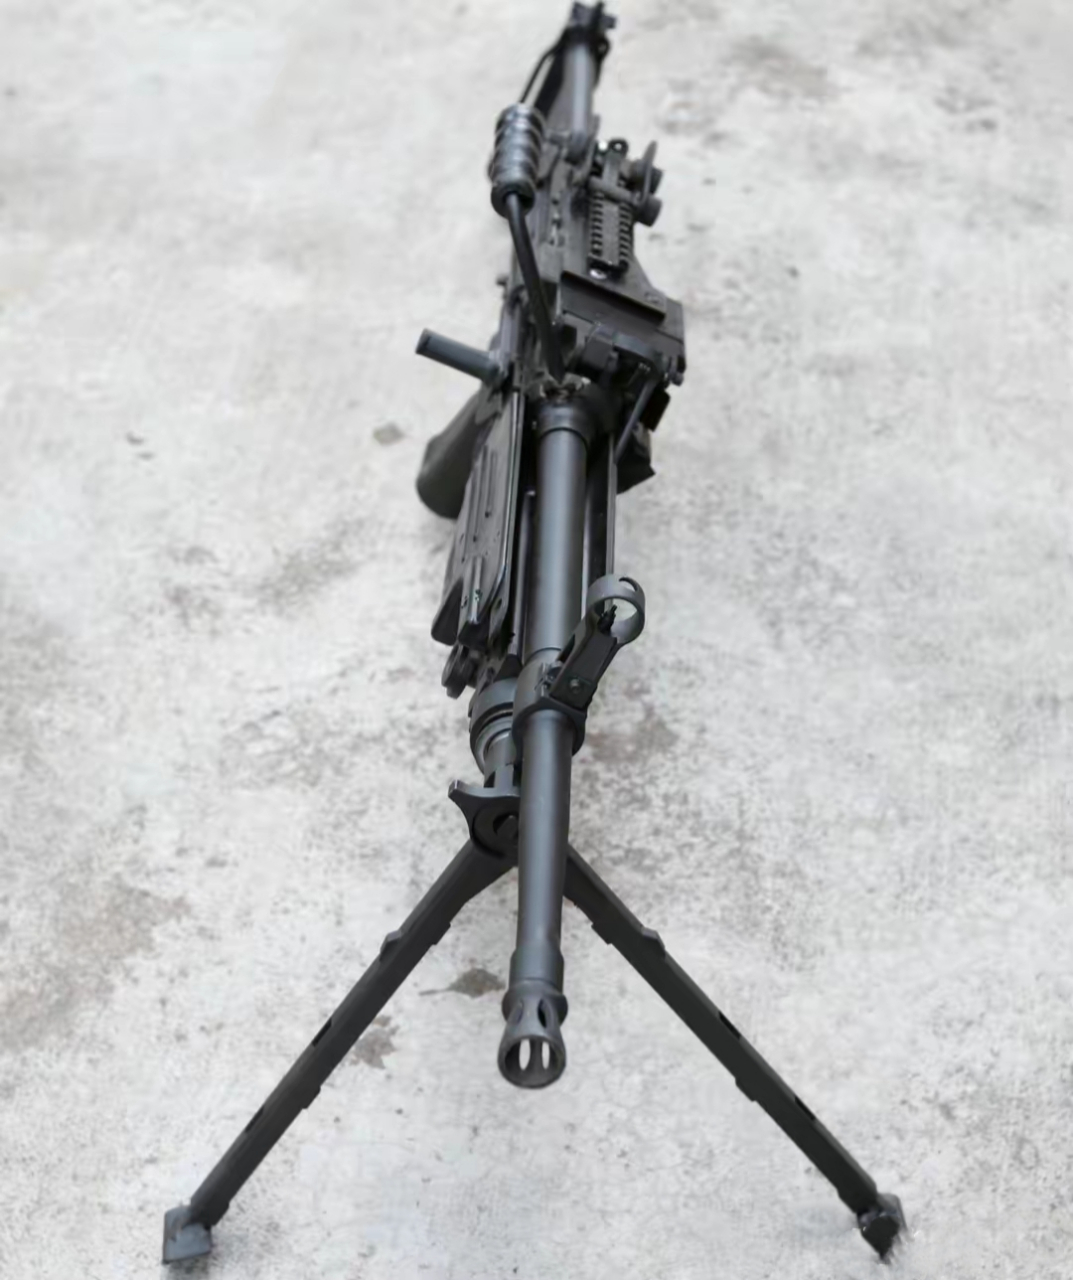 国产cs/lm8型556毫米轻机枪,该枪属于外贸型,主要用于出口